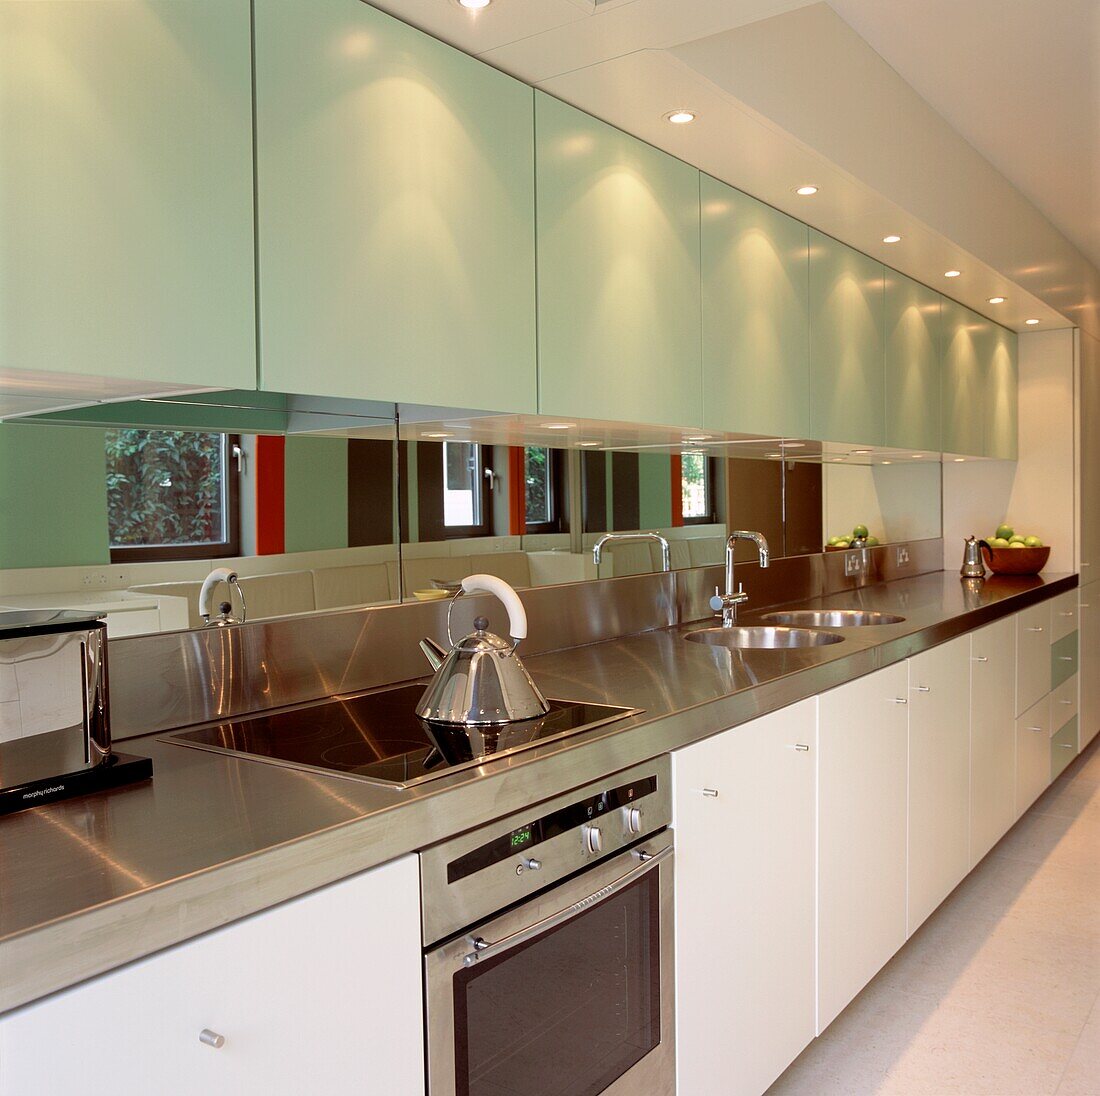 Modern kitchen units with mirrored splash-back